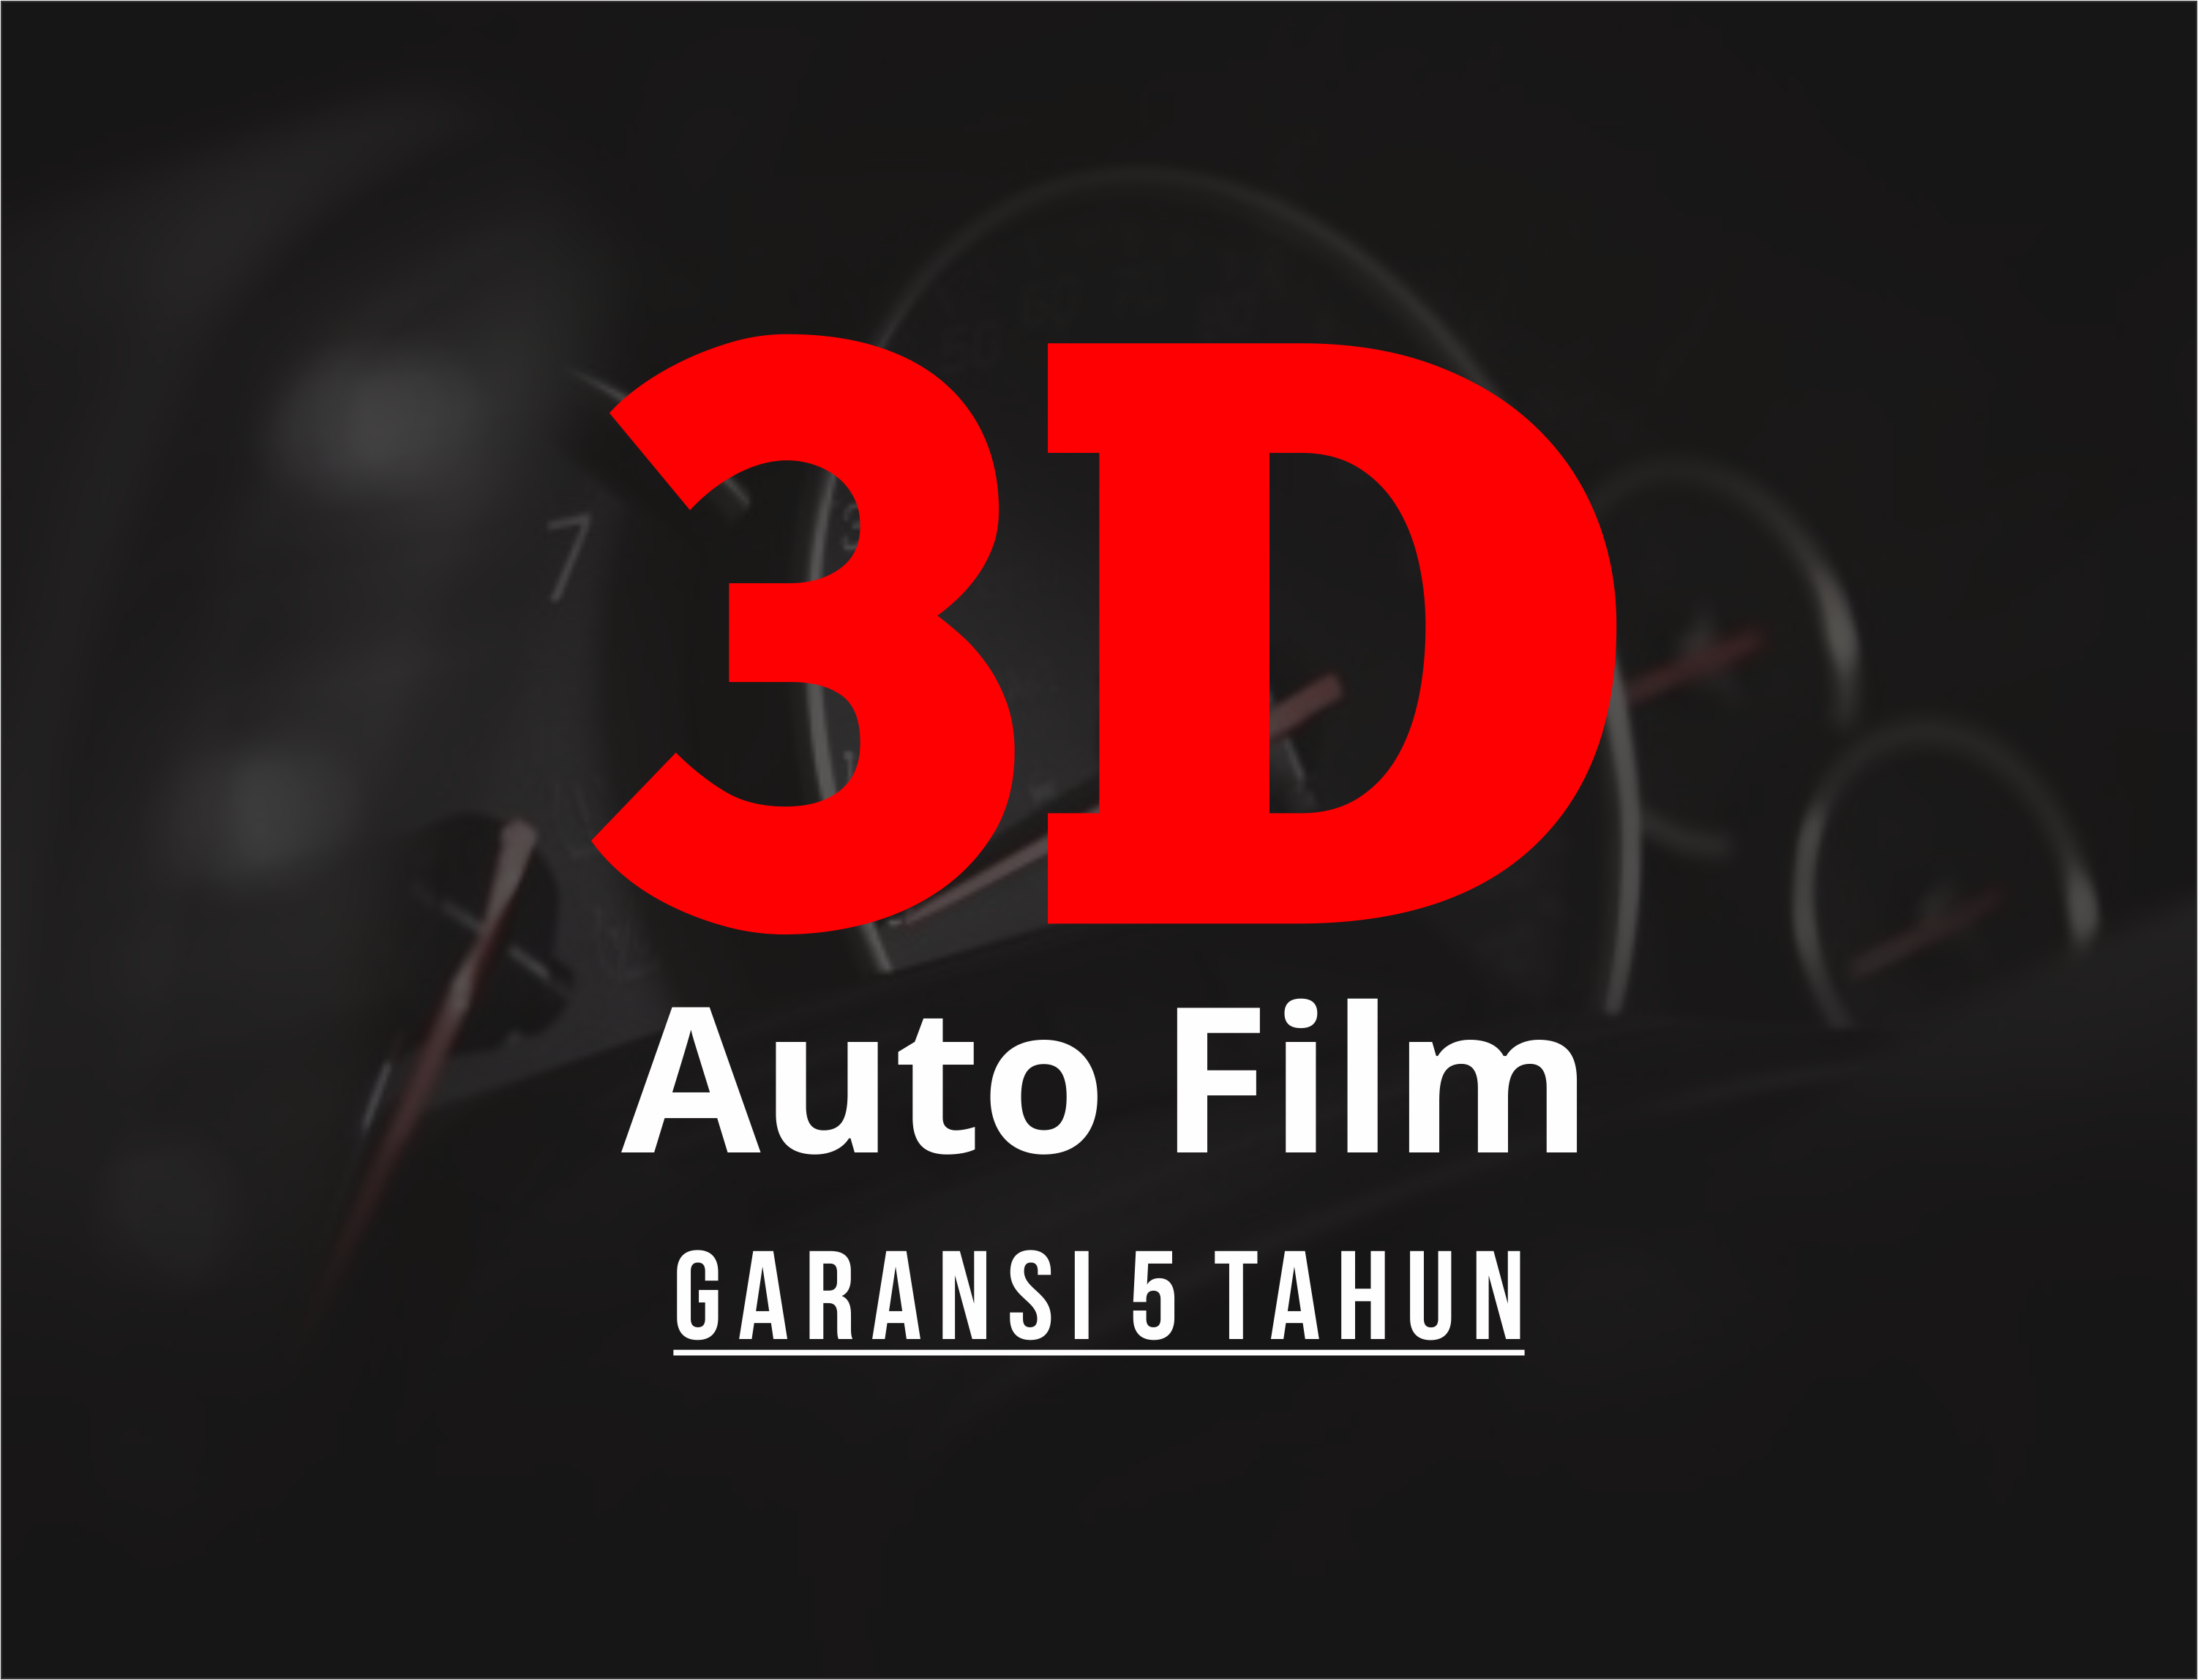 3D Autofilm - Full Body